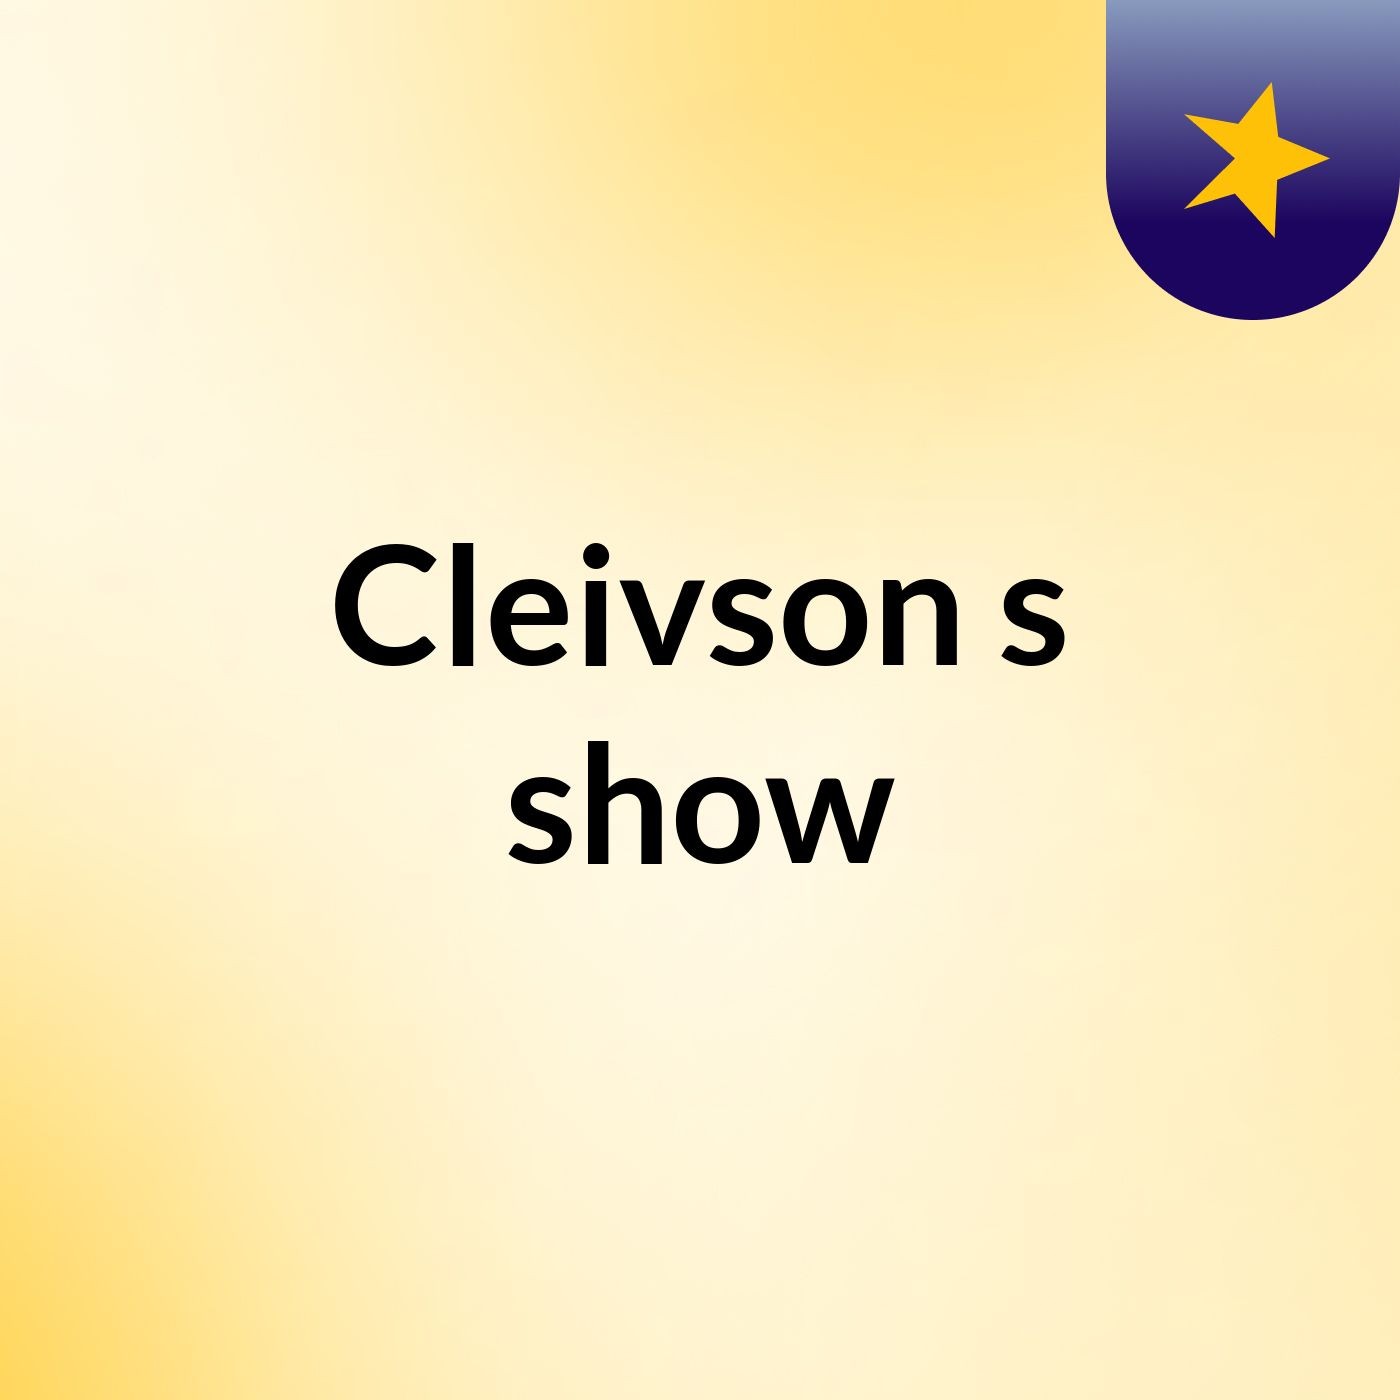 Cleivson's show